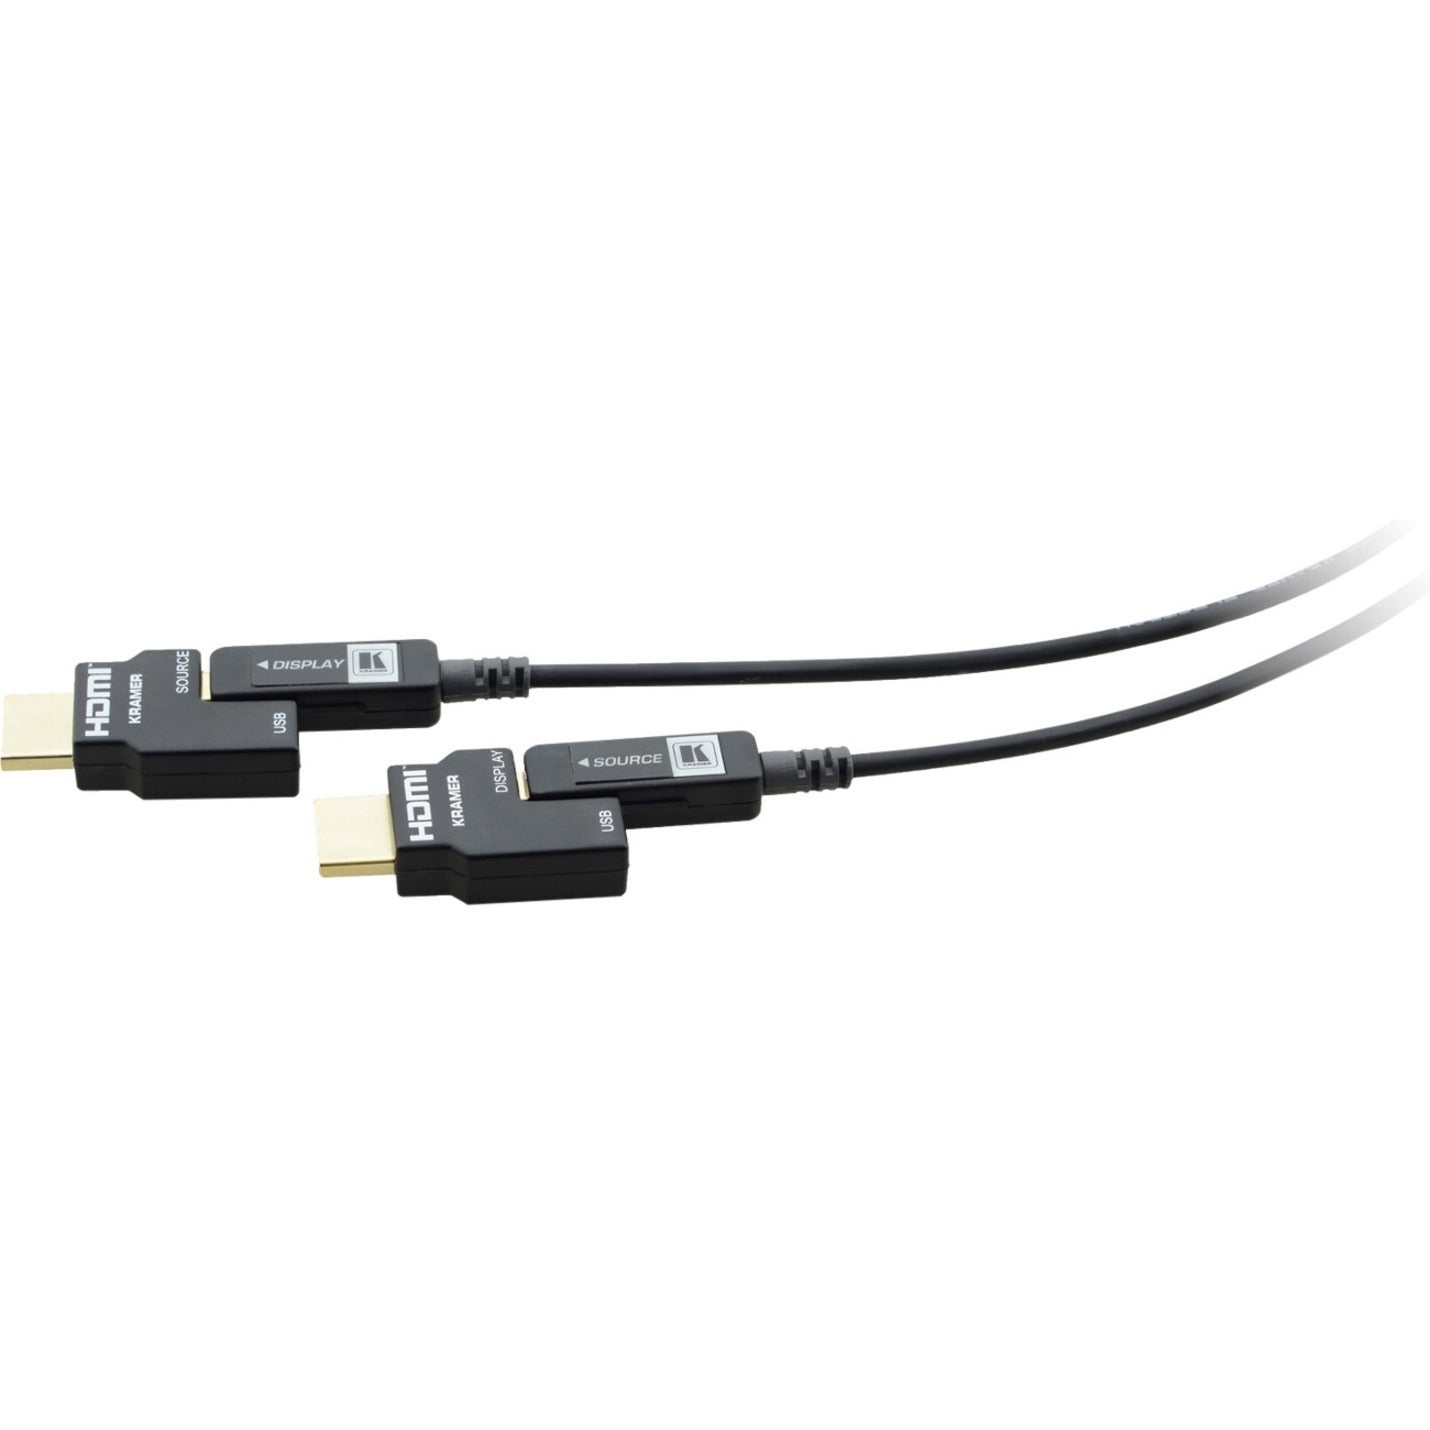 Kramer CP-AOCH/60-98 Attivo Ottico 4K Cavetto HDMI Pluggable 98.43 ft Resistente alla Corrosione Protezione EMI/RF Certificato RoHS